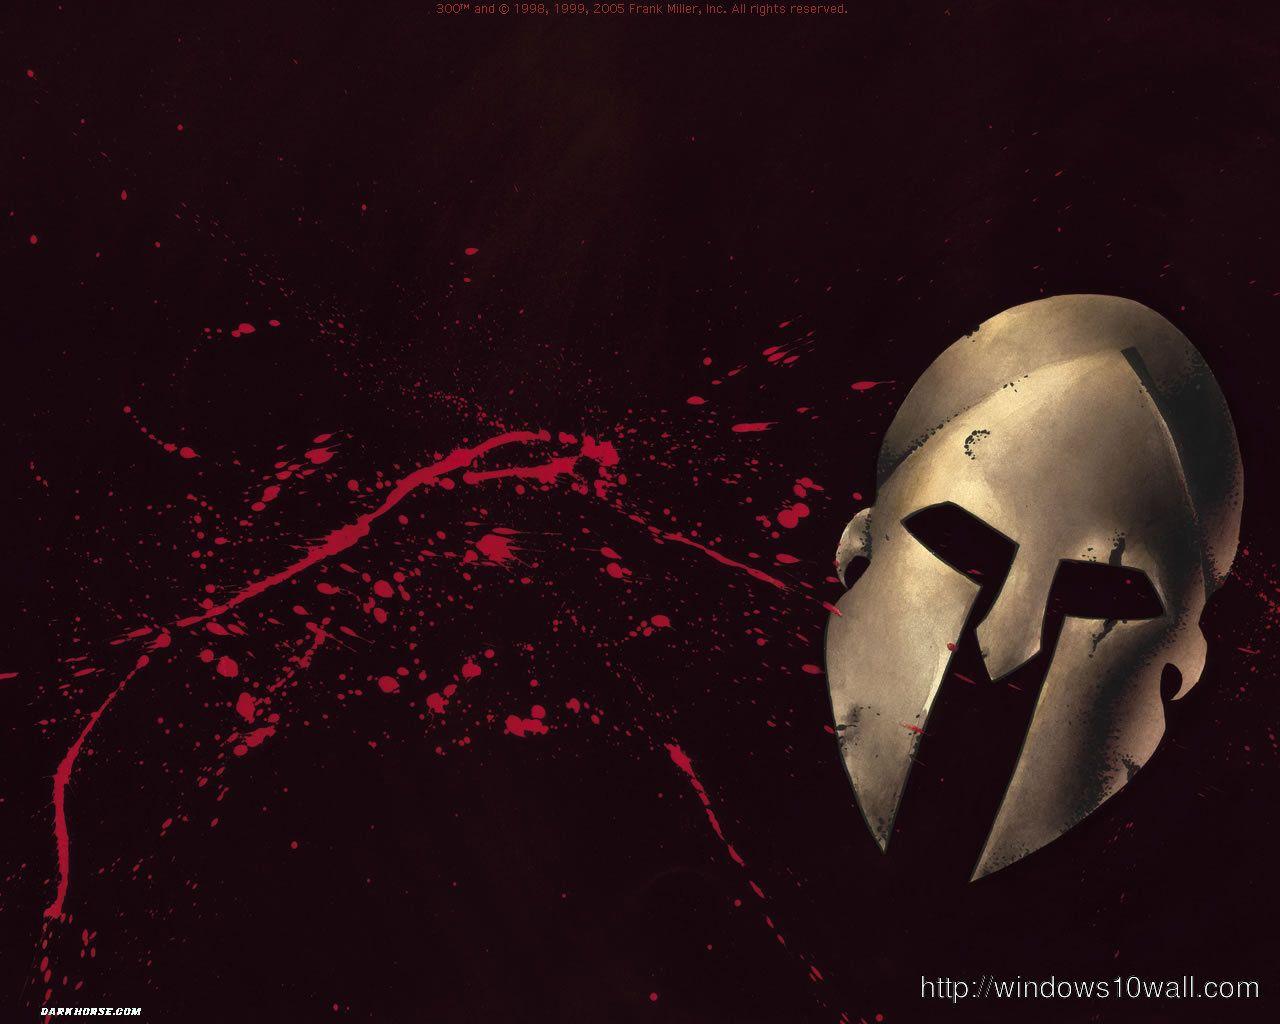 spartan mask 300 movie ideas background wallpaper 10